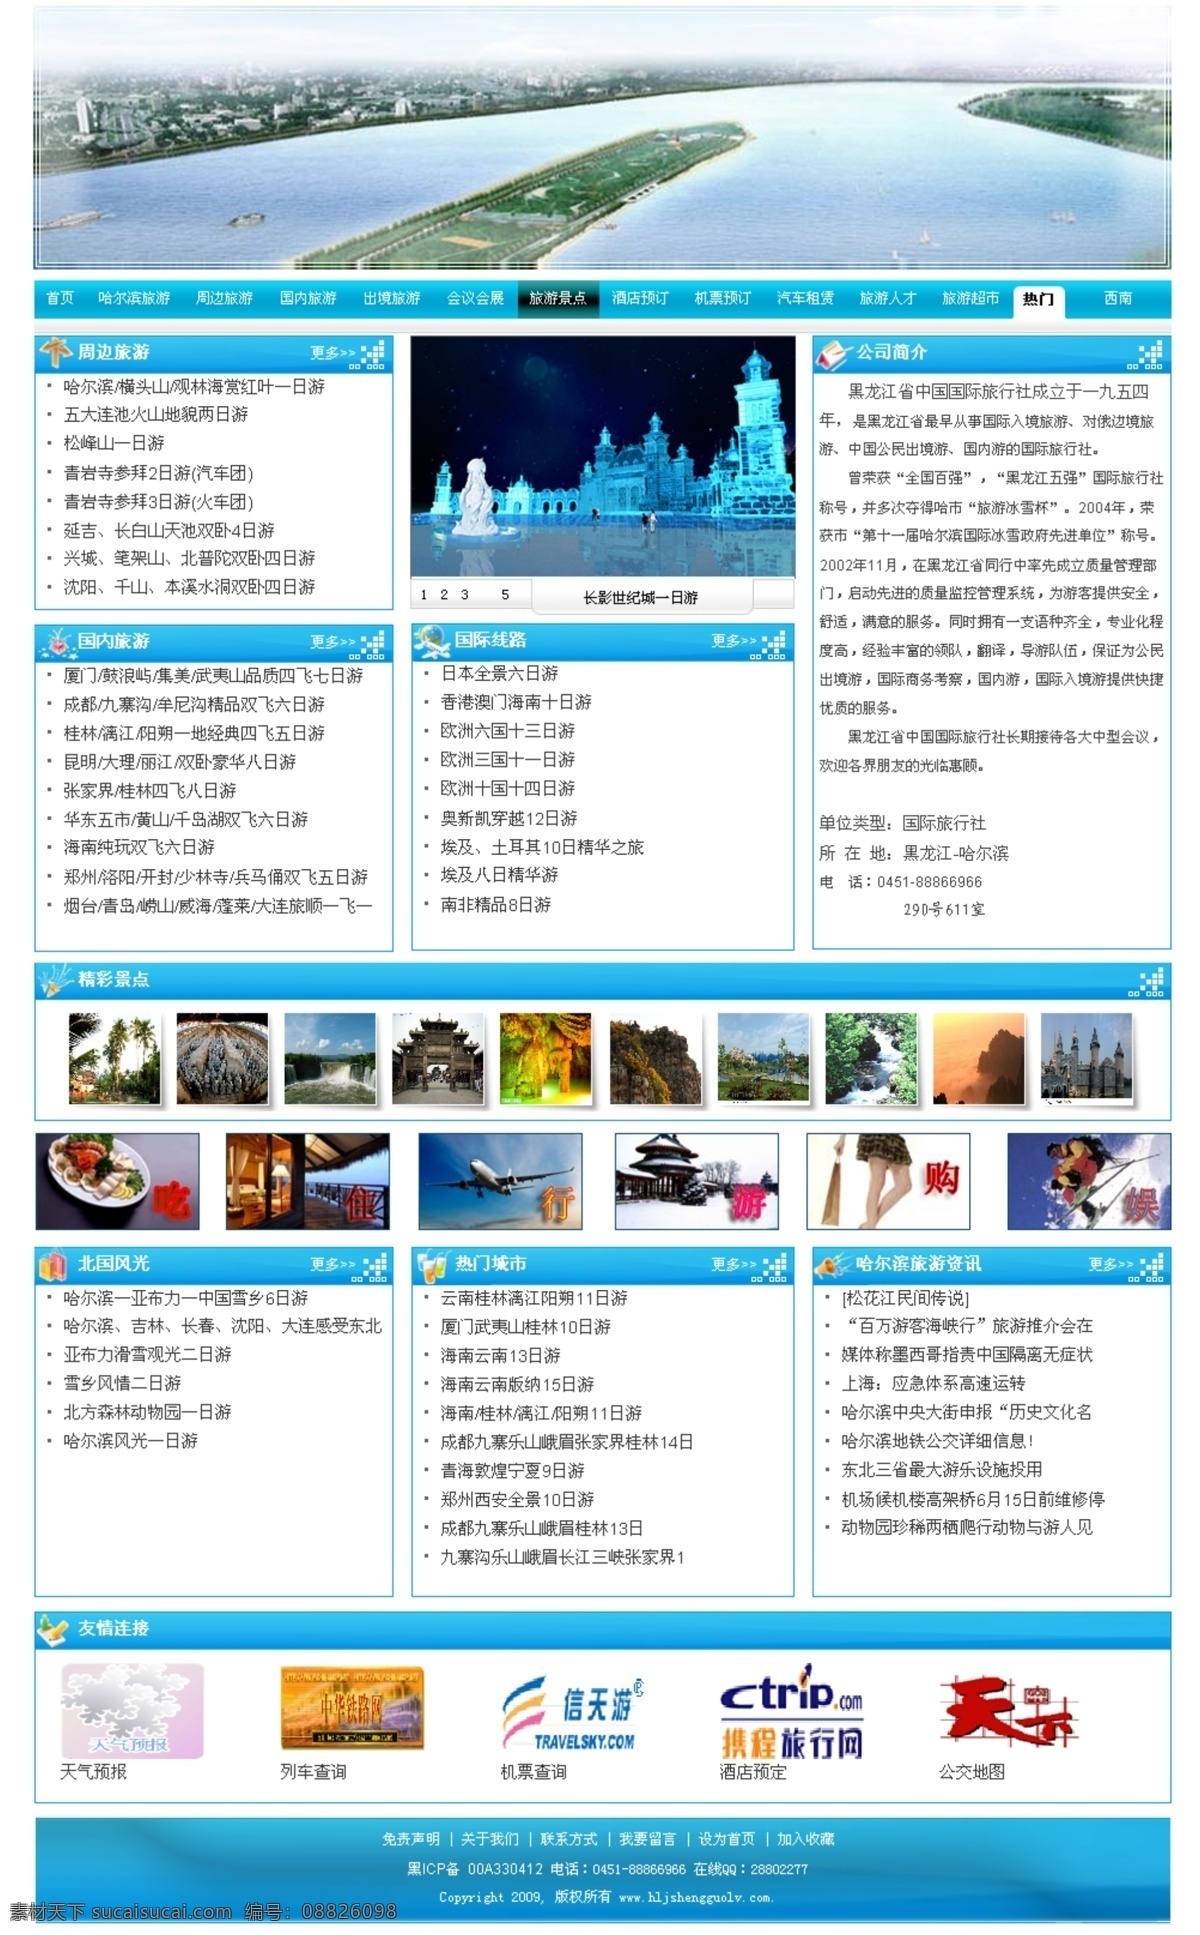 网页模板 源文件库 中文模版 网页素材